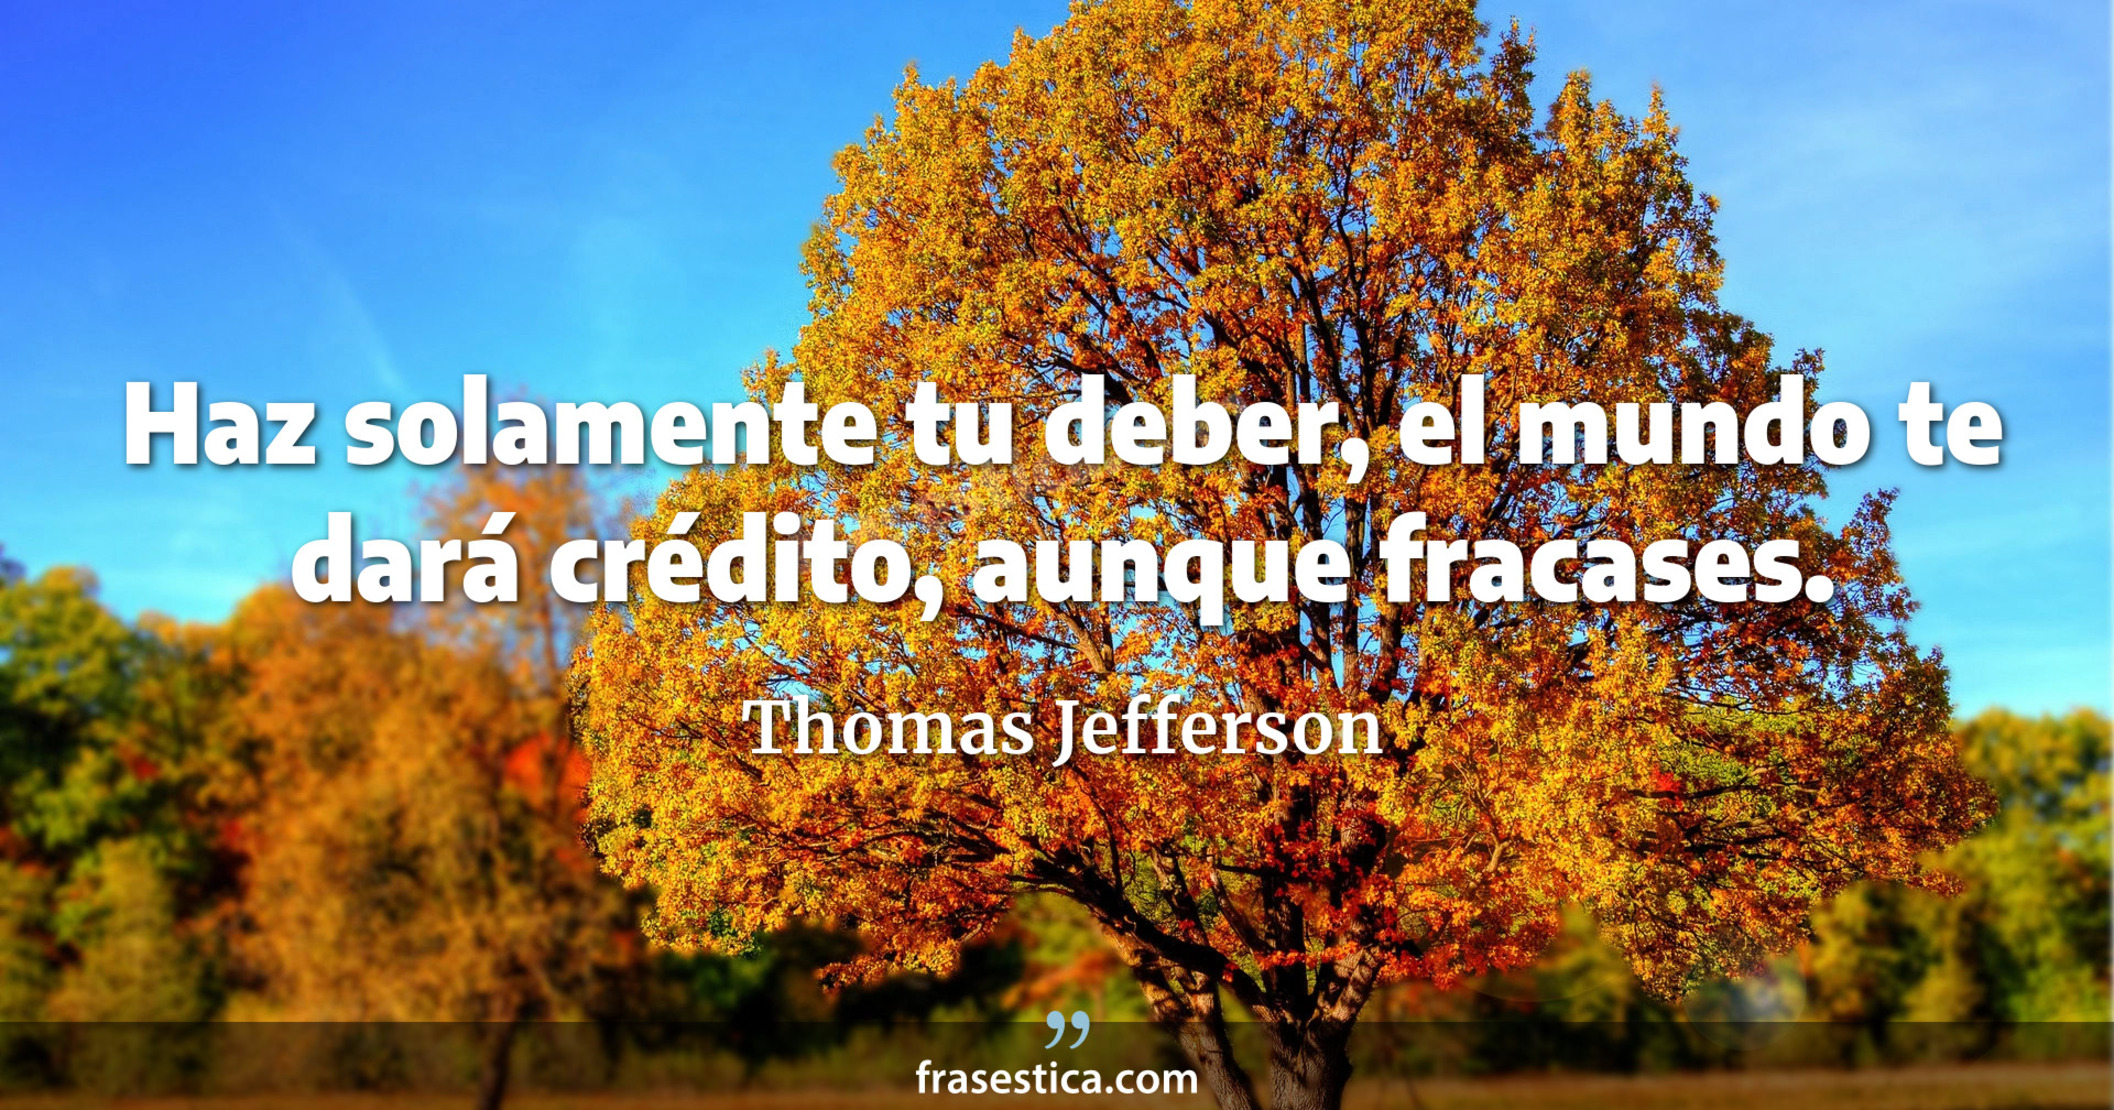 Haz solamente tu deber, el mundo te dará crédito, aunque fracases. - Thomas Jefferson